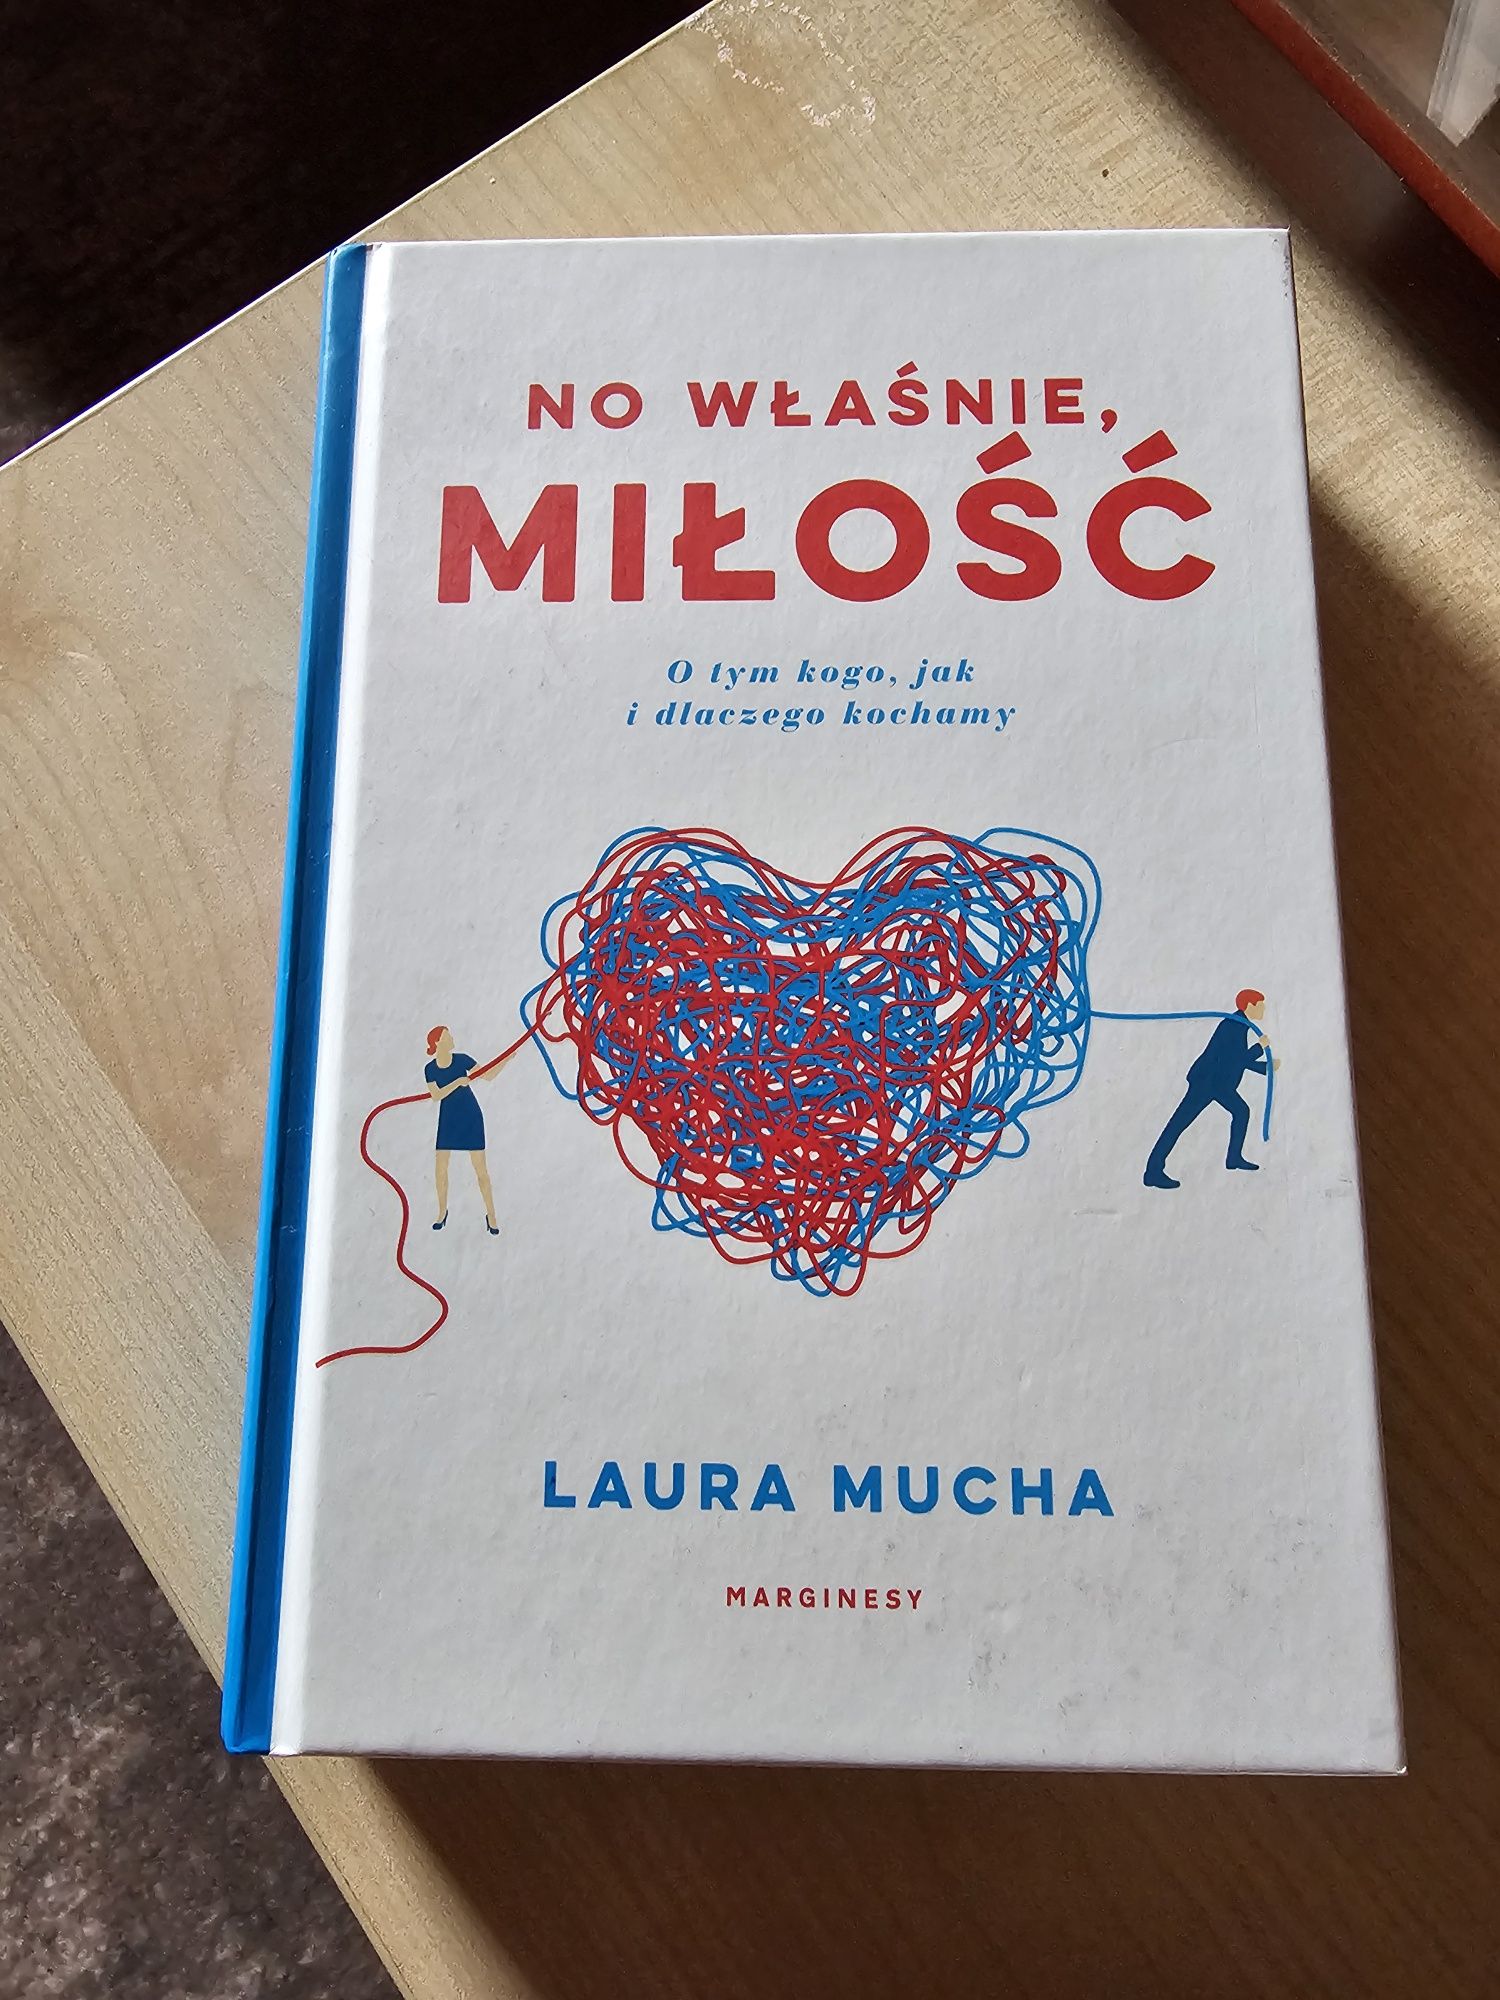 Książka "No właśnie, miłość" Laura Mucha